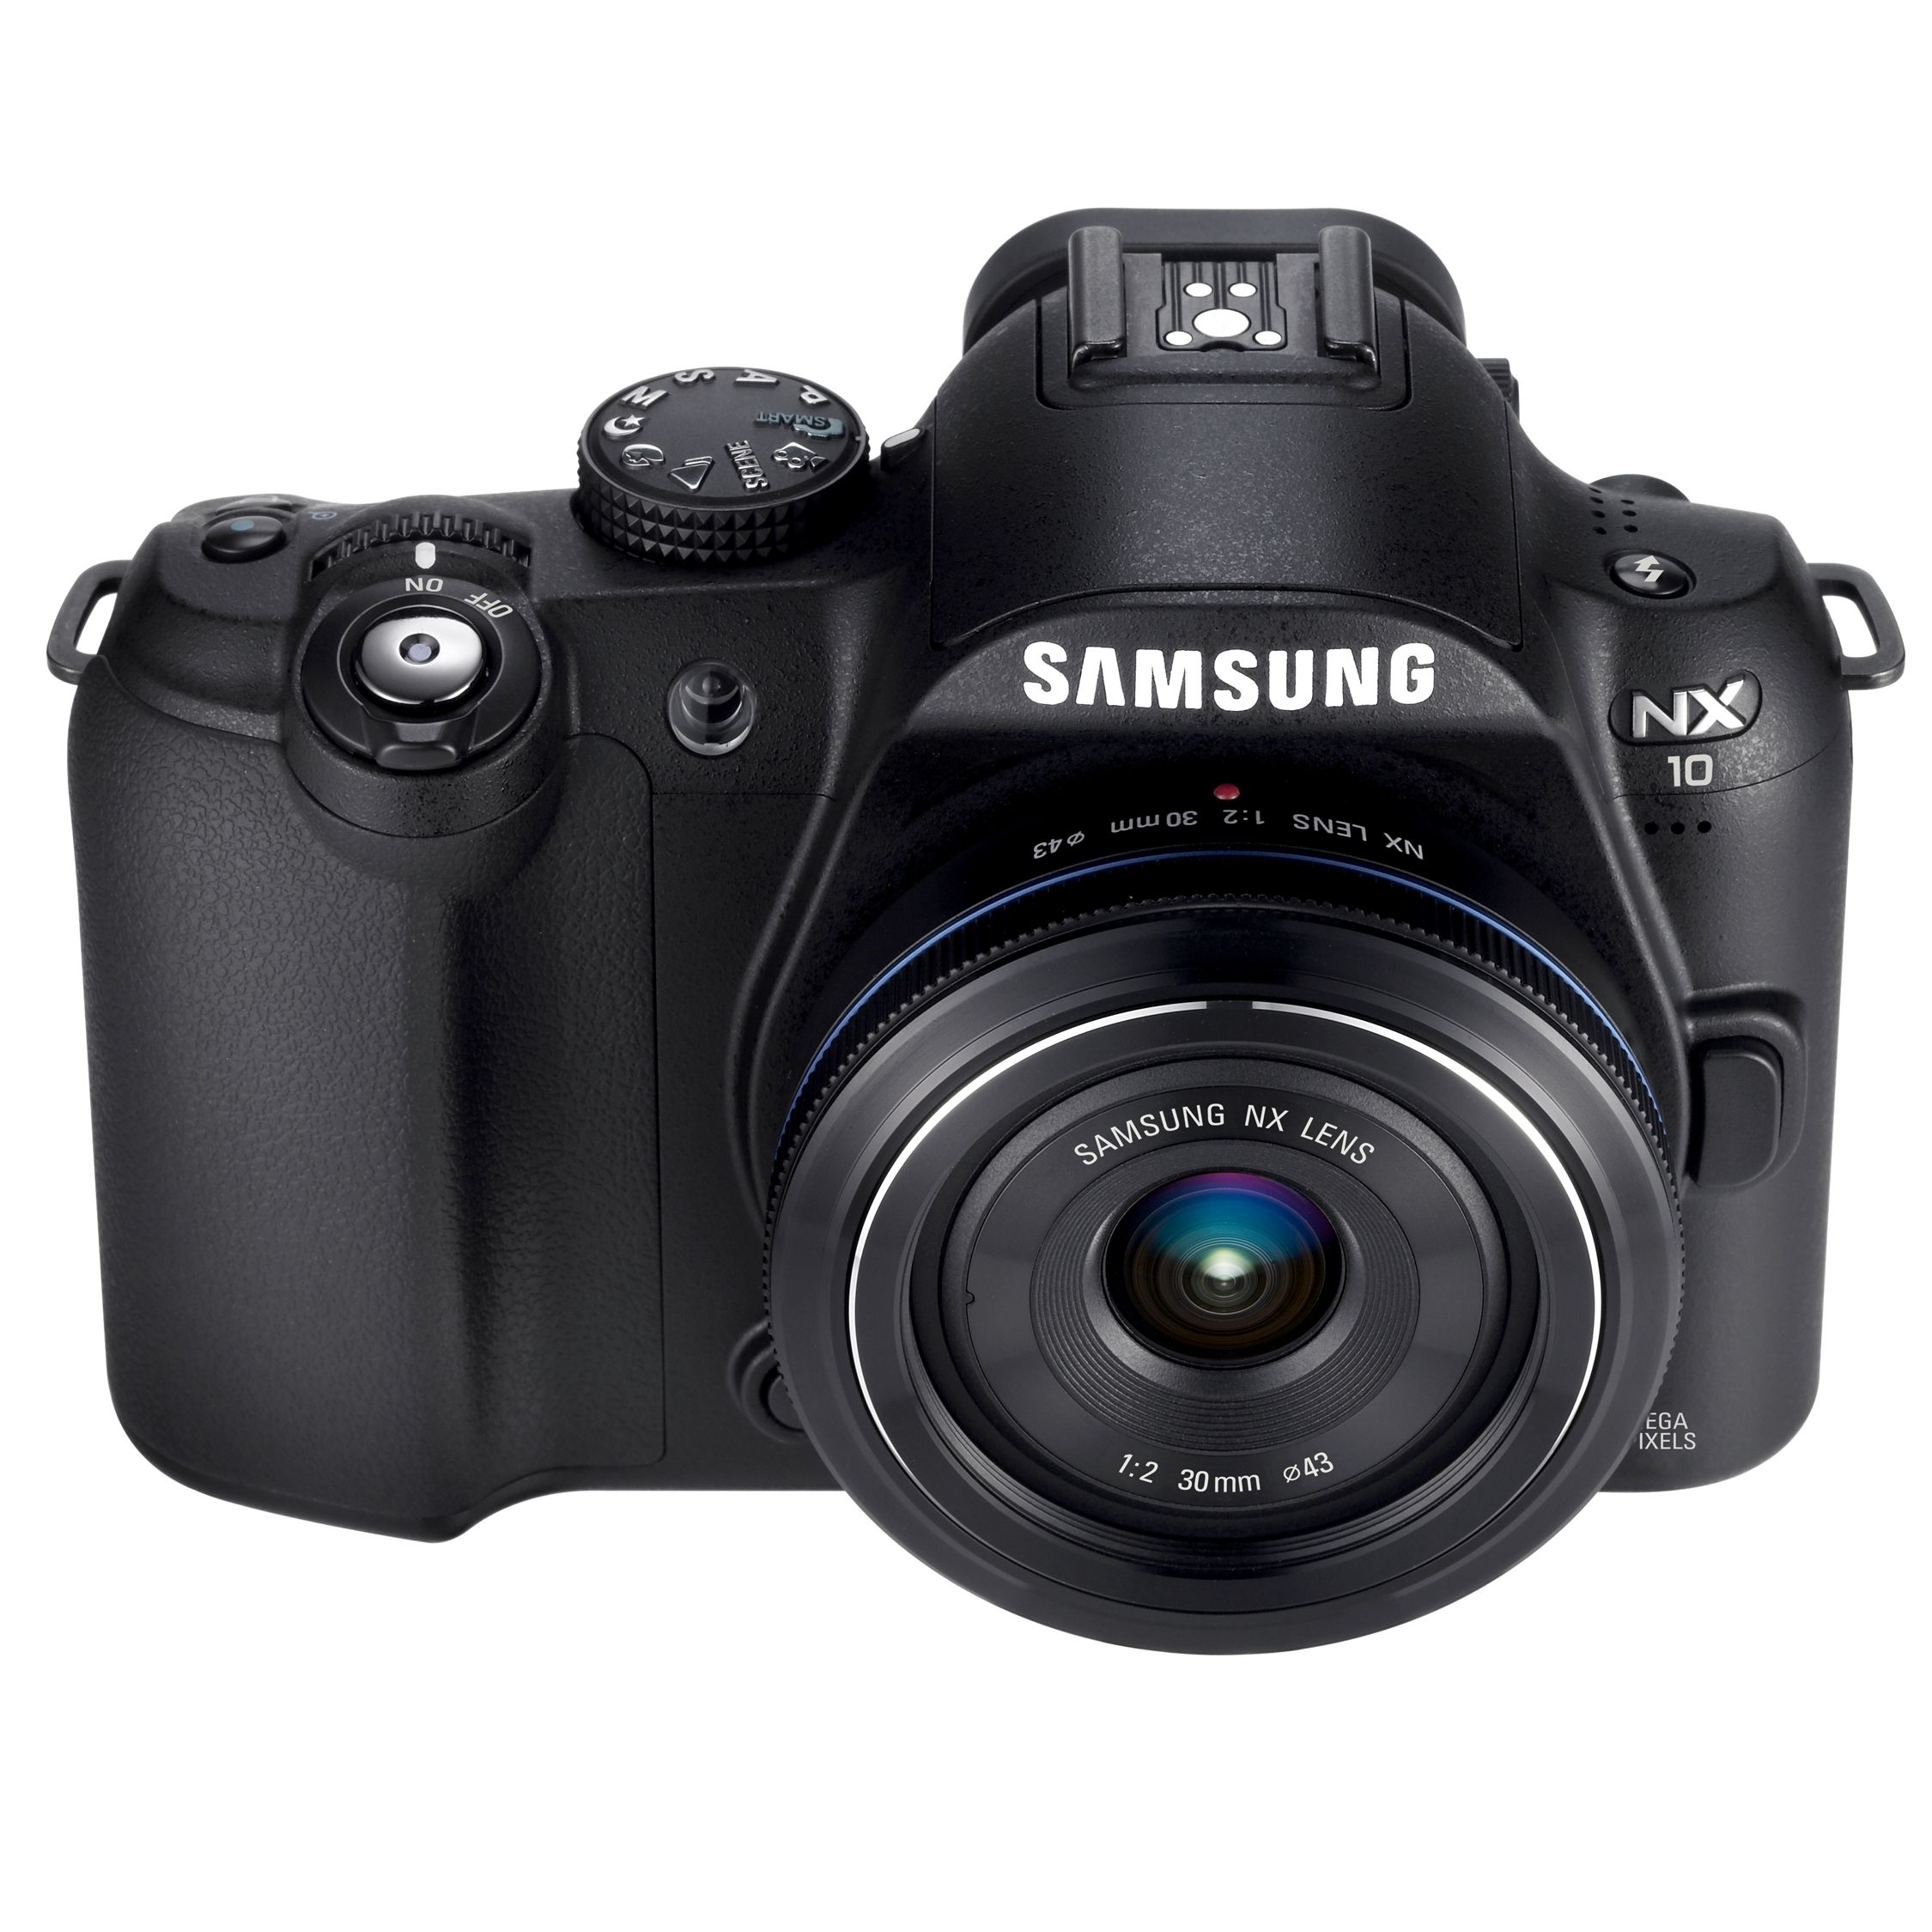 Samsung NX10 Digital SLR Camera with 18-55 and 50-200 Lens at John Lewis